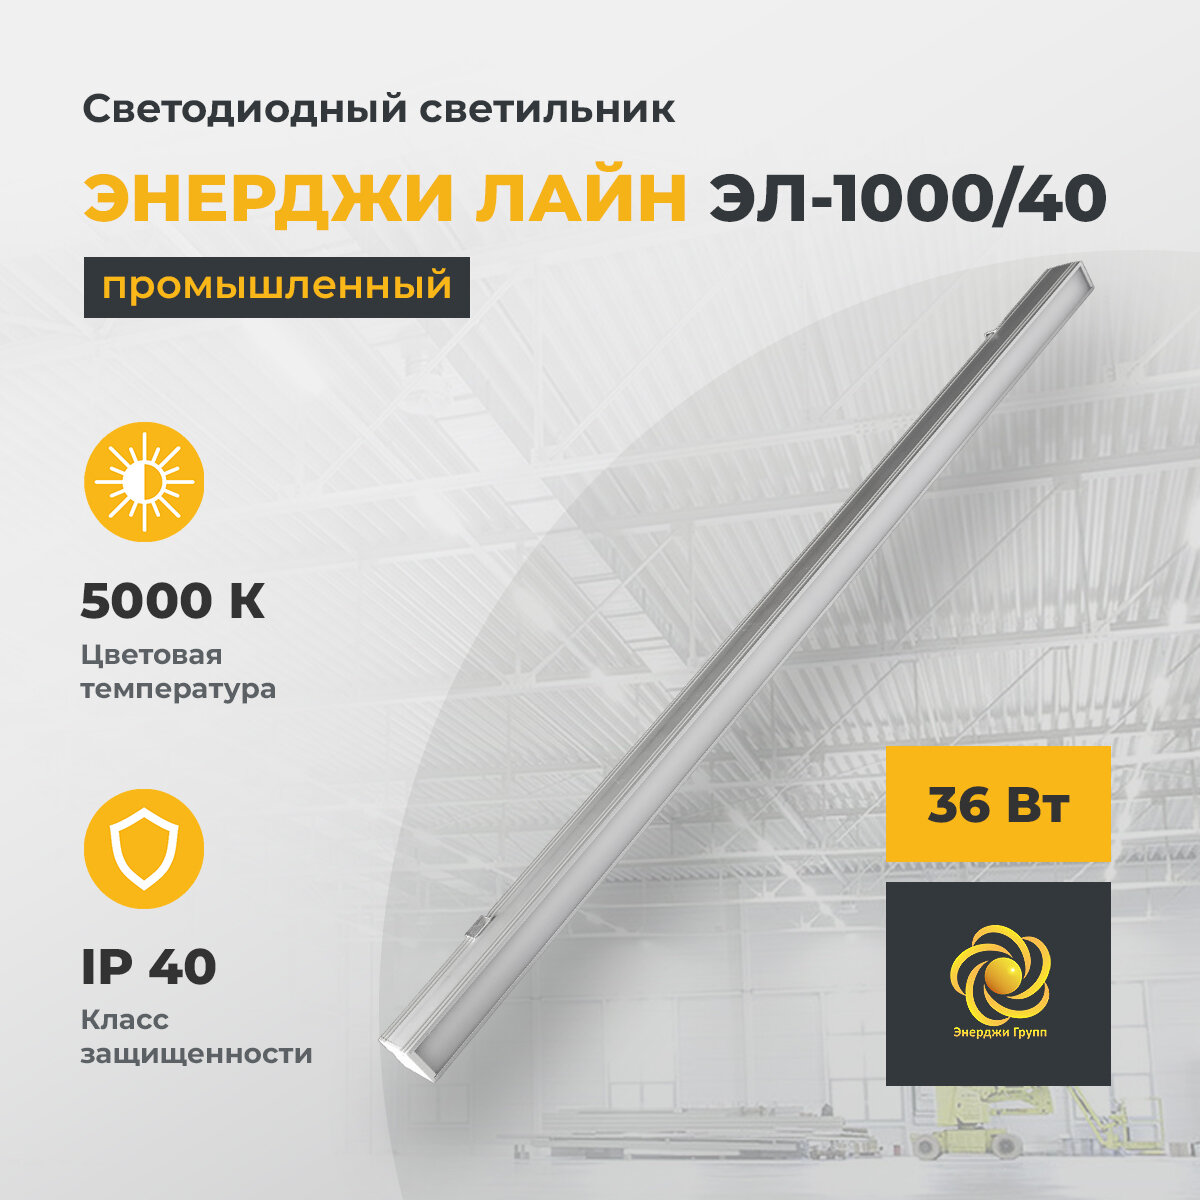 Светодиодный светильник промышленный линейный энерджи лайн ЭЛ-1000/40, 36 Вт, 5000 К, 3700 Лм